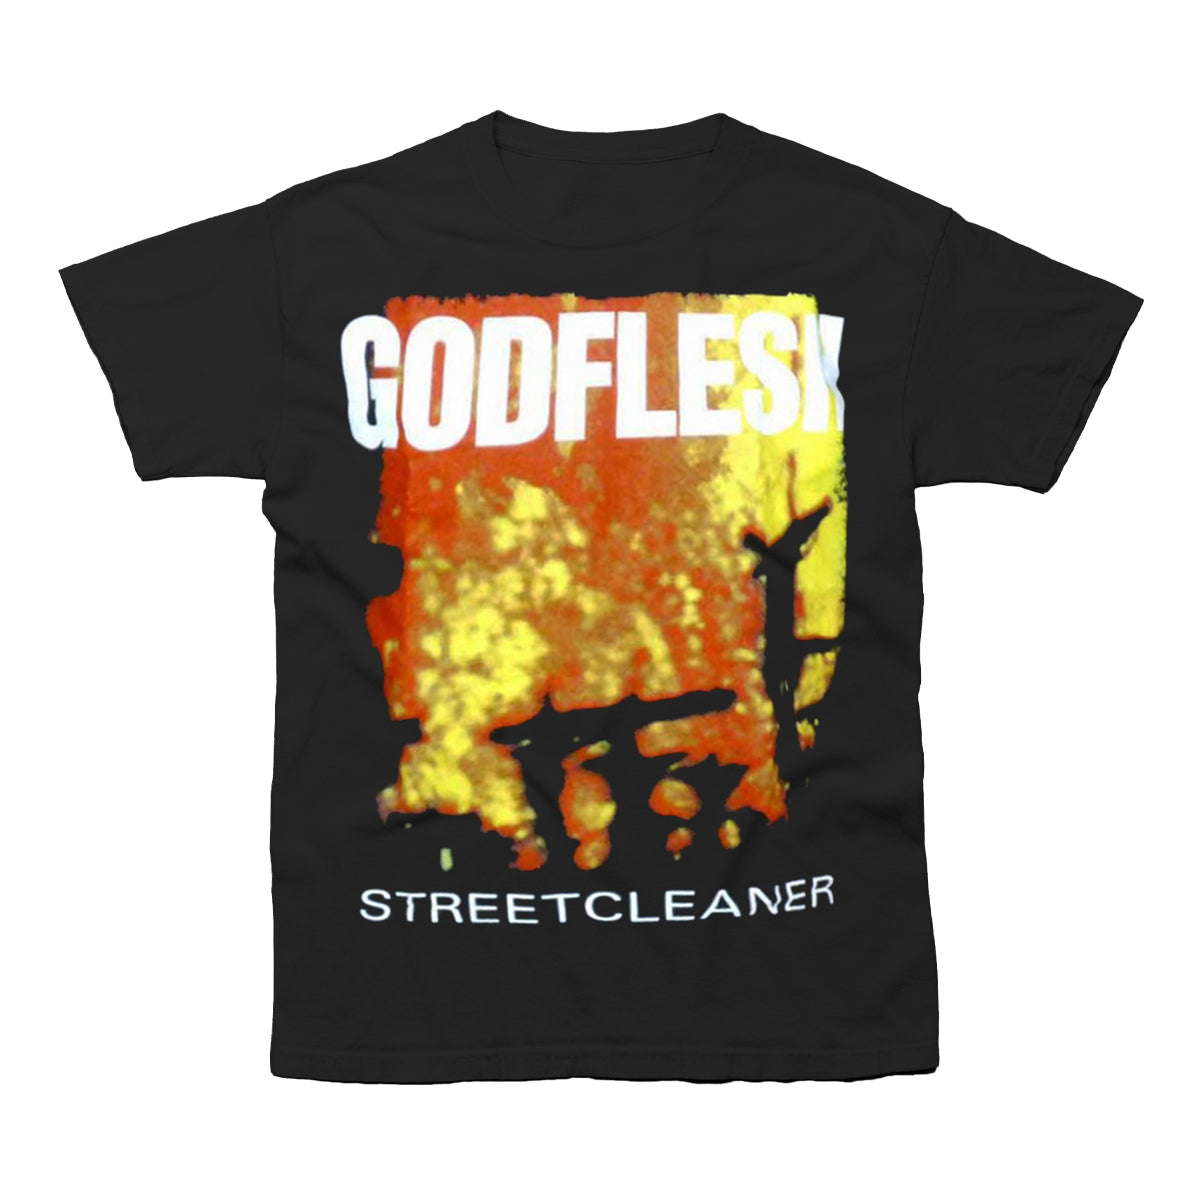 Godflesh "Streetcleaner" T shirt